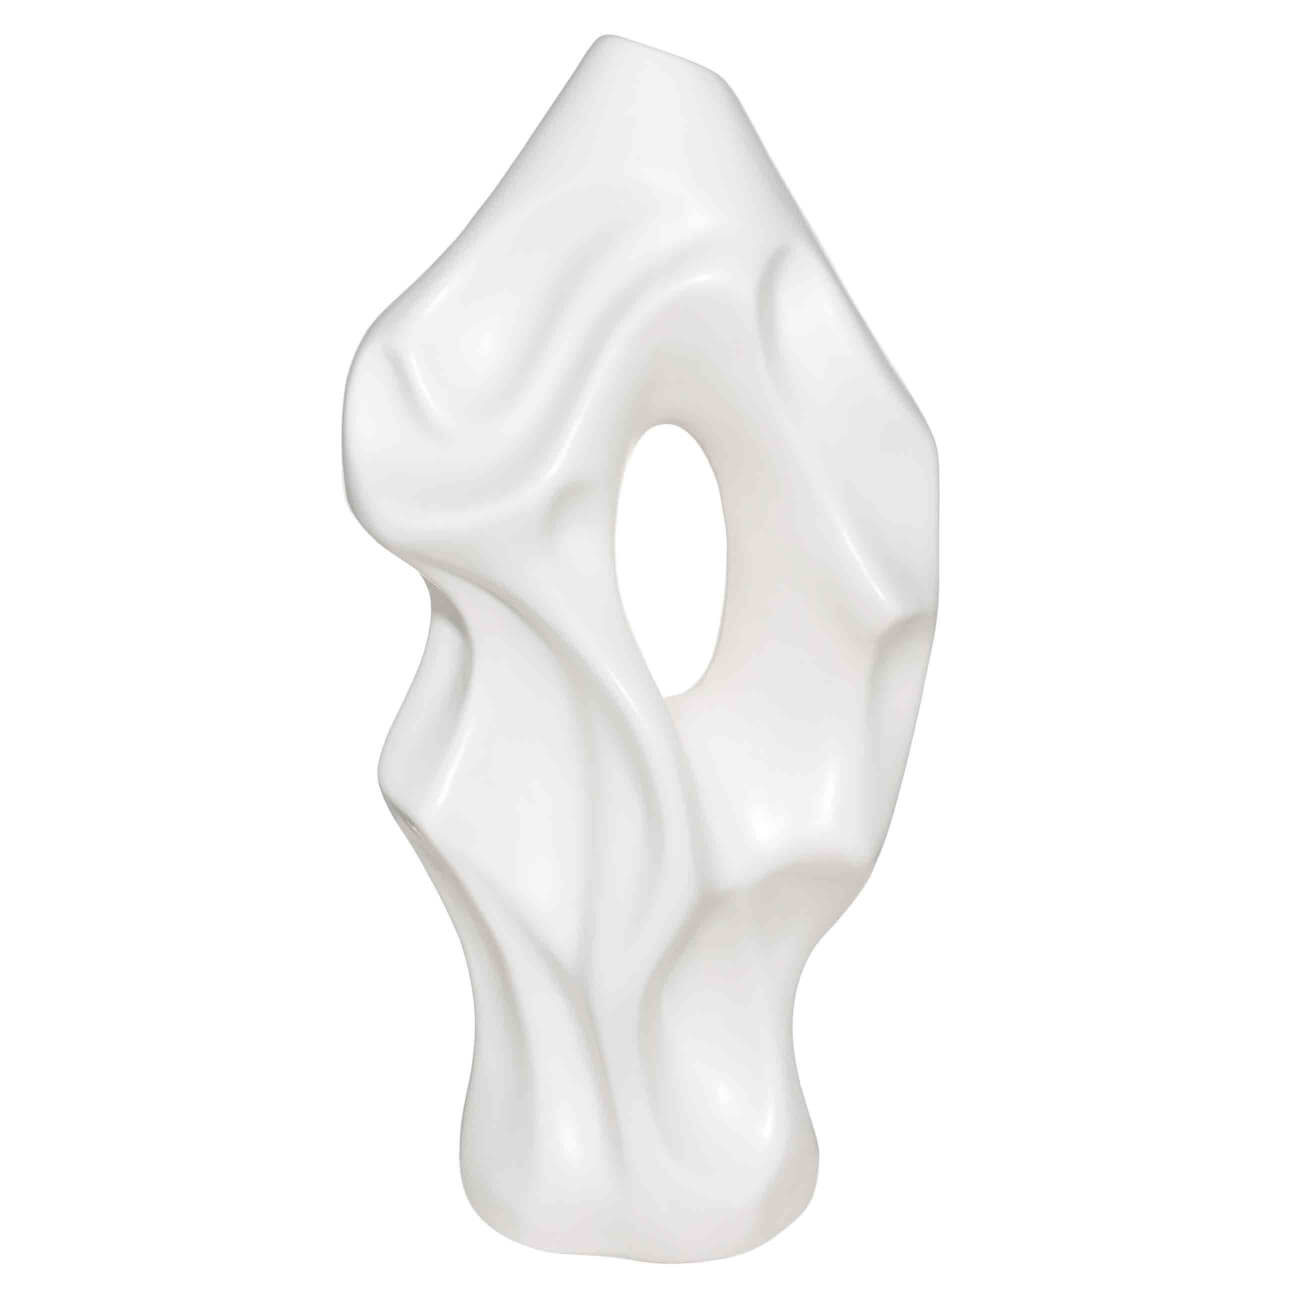 Ваза для цветов, 37 см, декоративная, керамика, белая, Мятый эффект, Crumple ваза для ов 25 см декоративная керамика белая голова и рука face